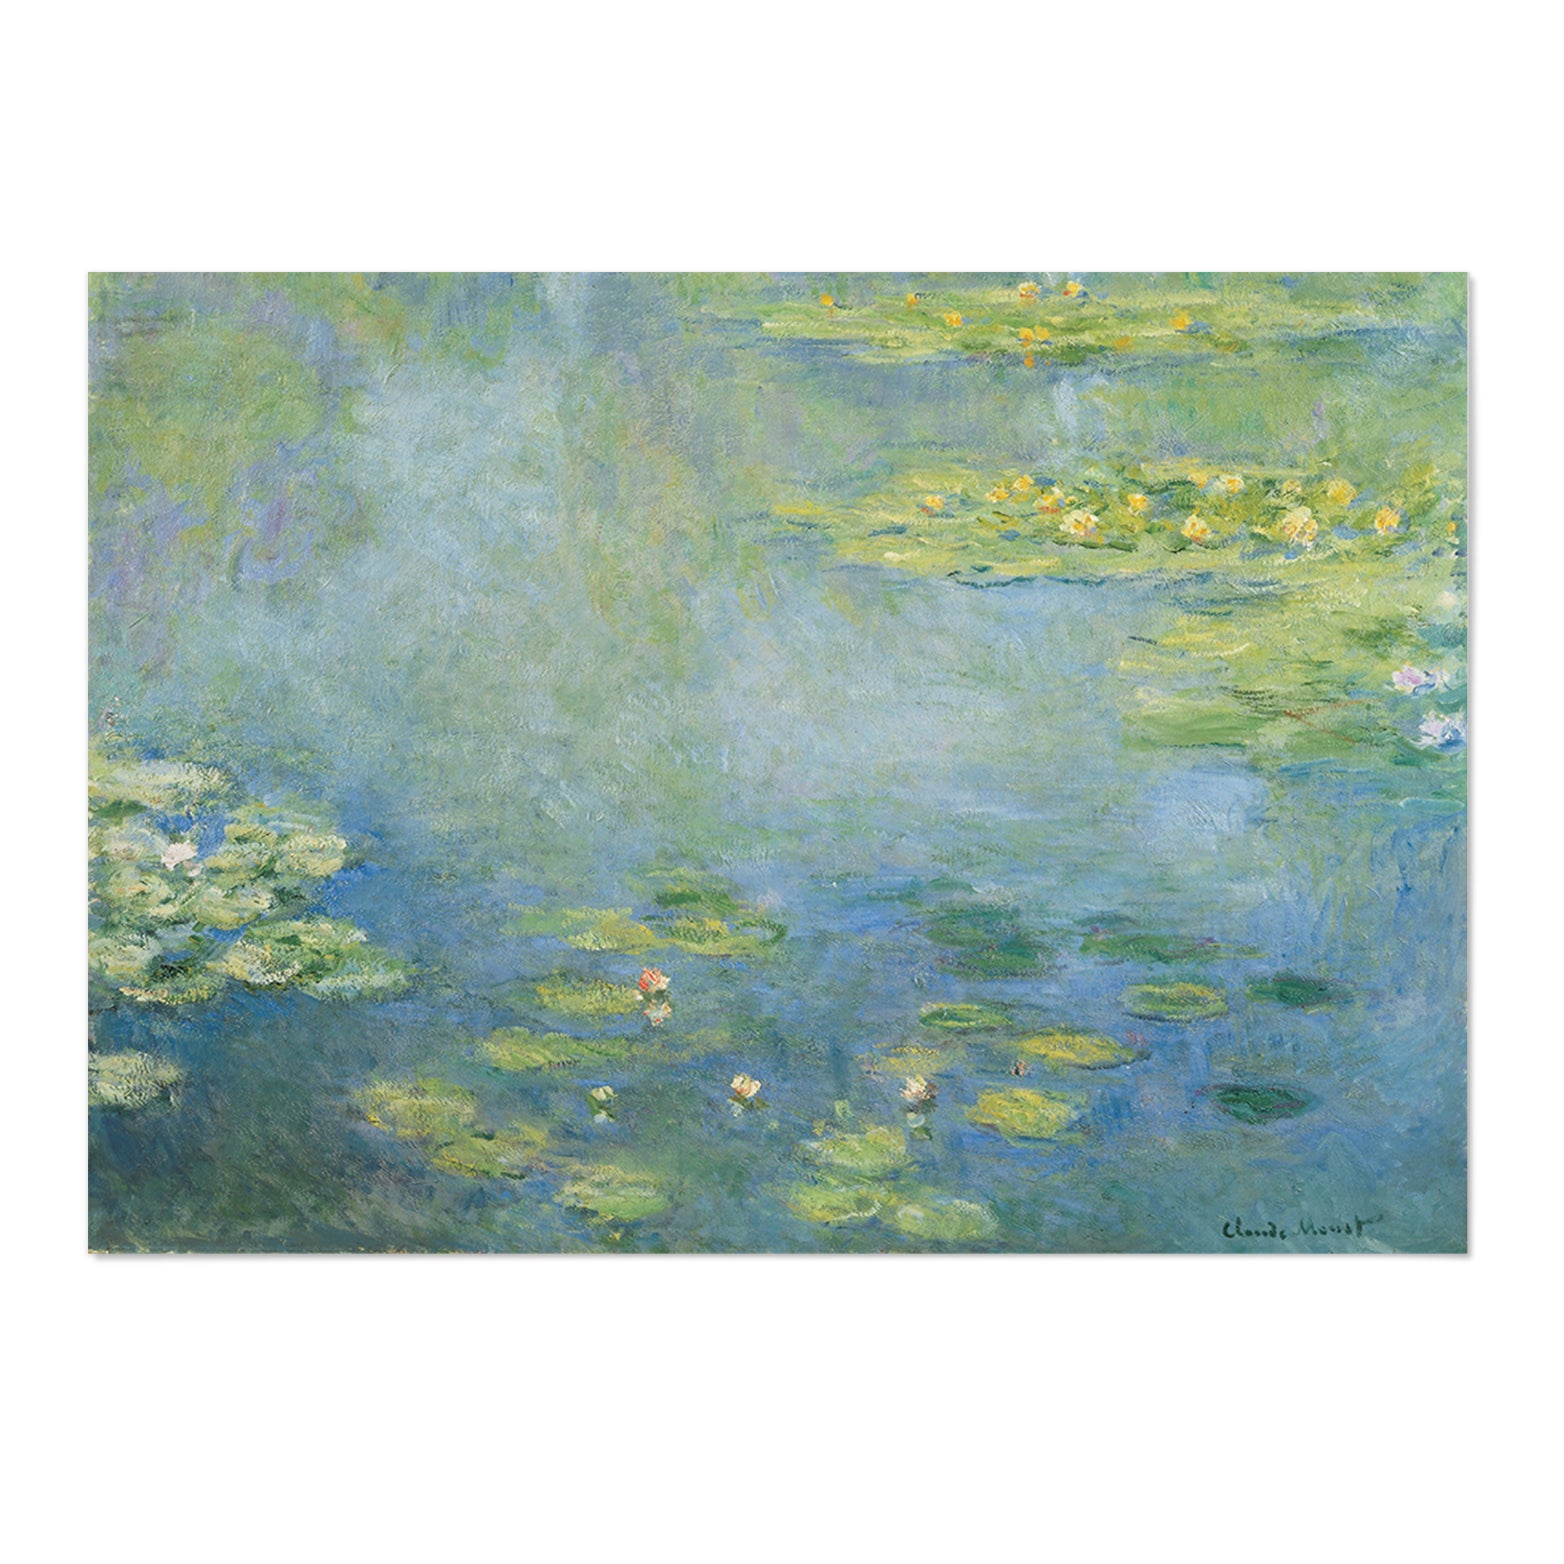 Monet Master of Light Art Print - MJ Design Studio